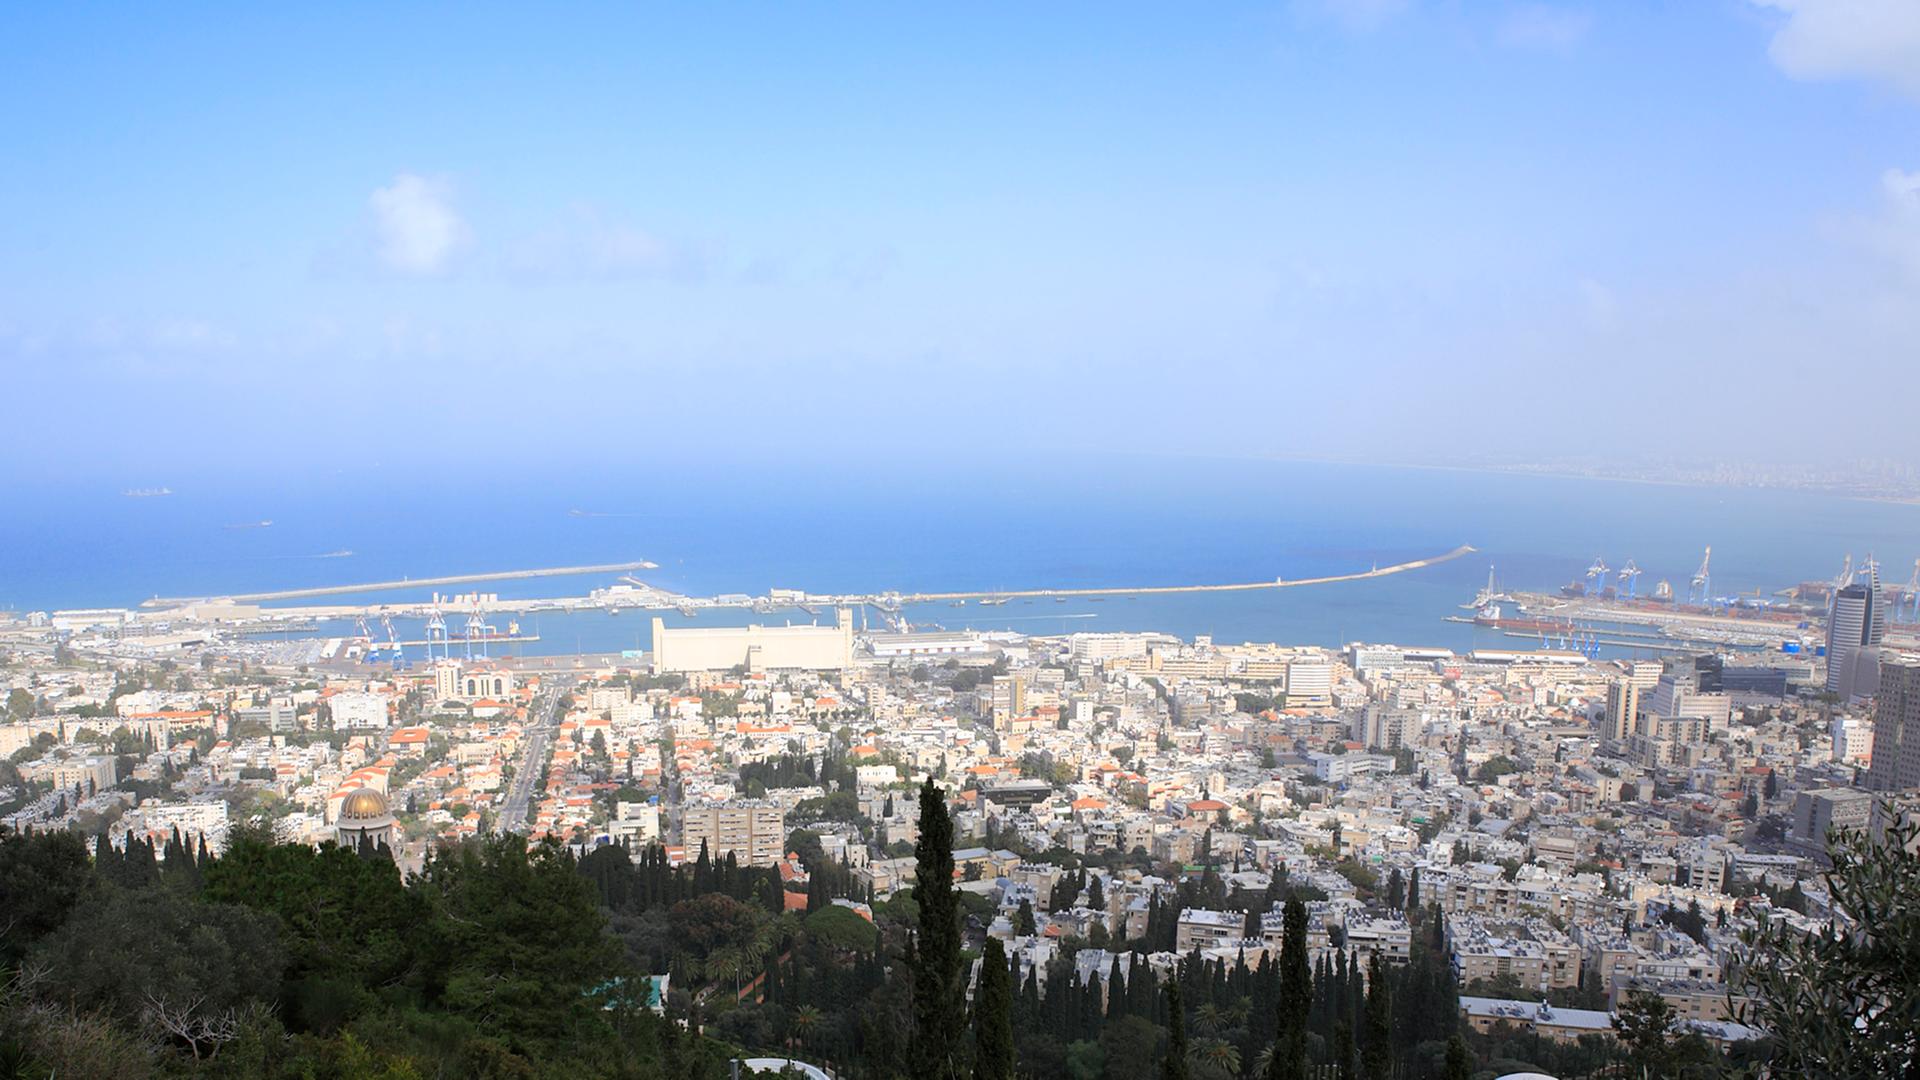 Blick von einer Anhöhe auf die israelische Hafenstadt Haifa